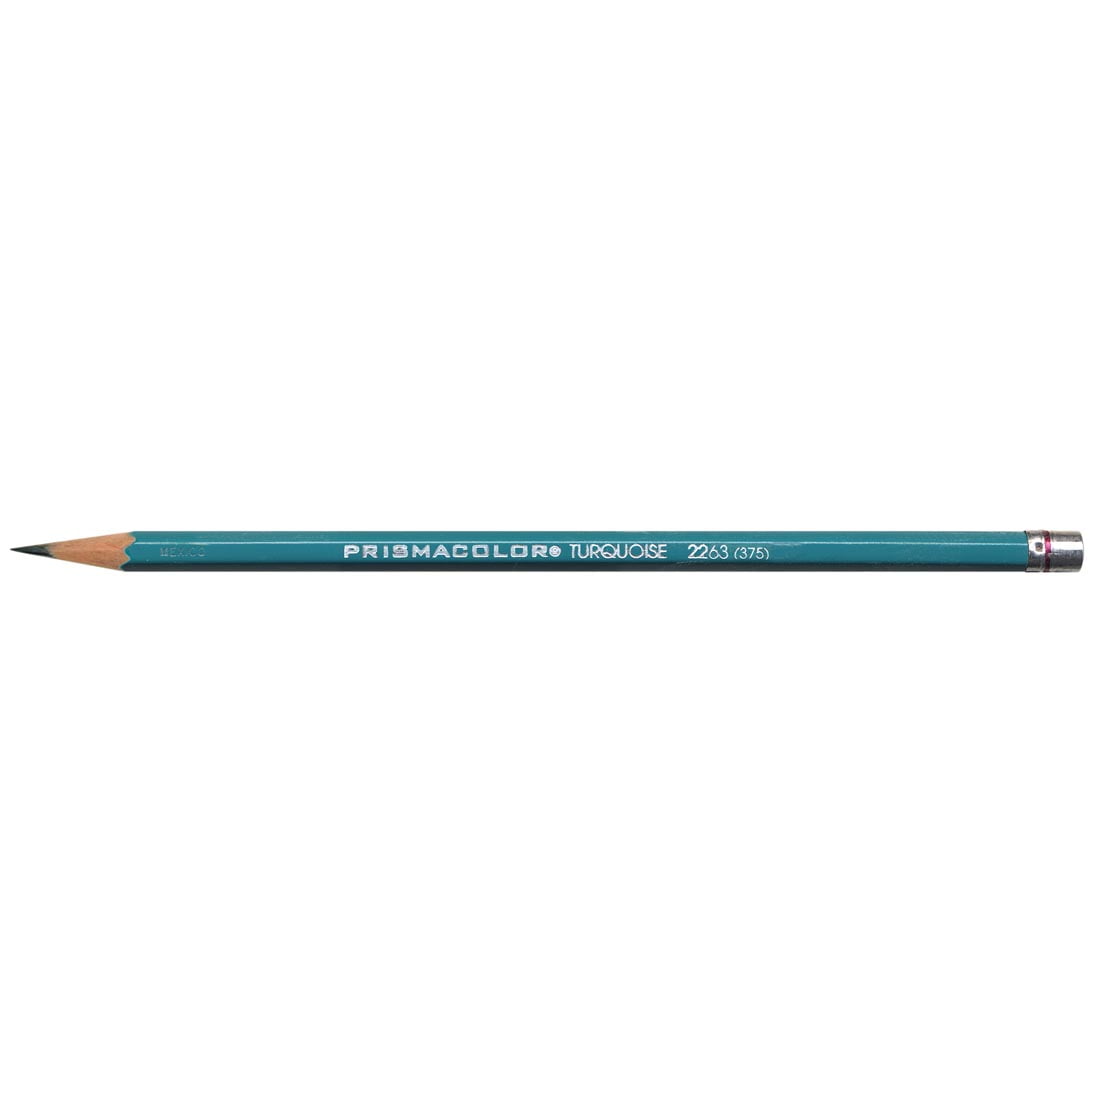 Prismacolor Premier Turquoise Drawing Pencils - 4B